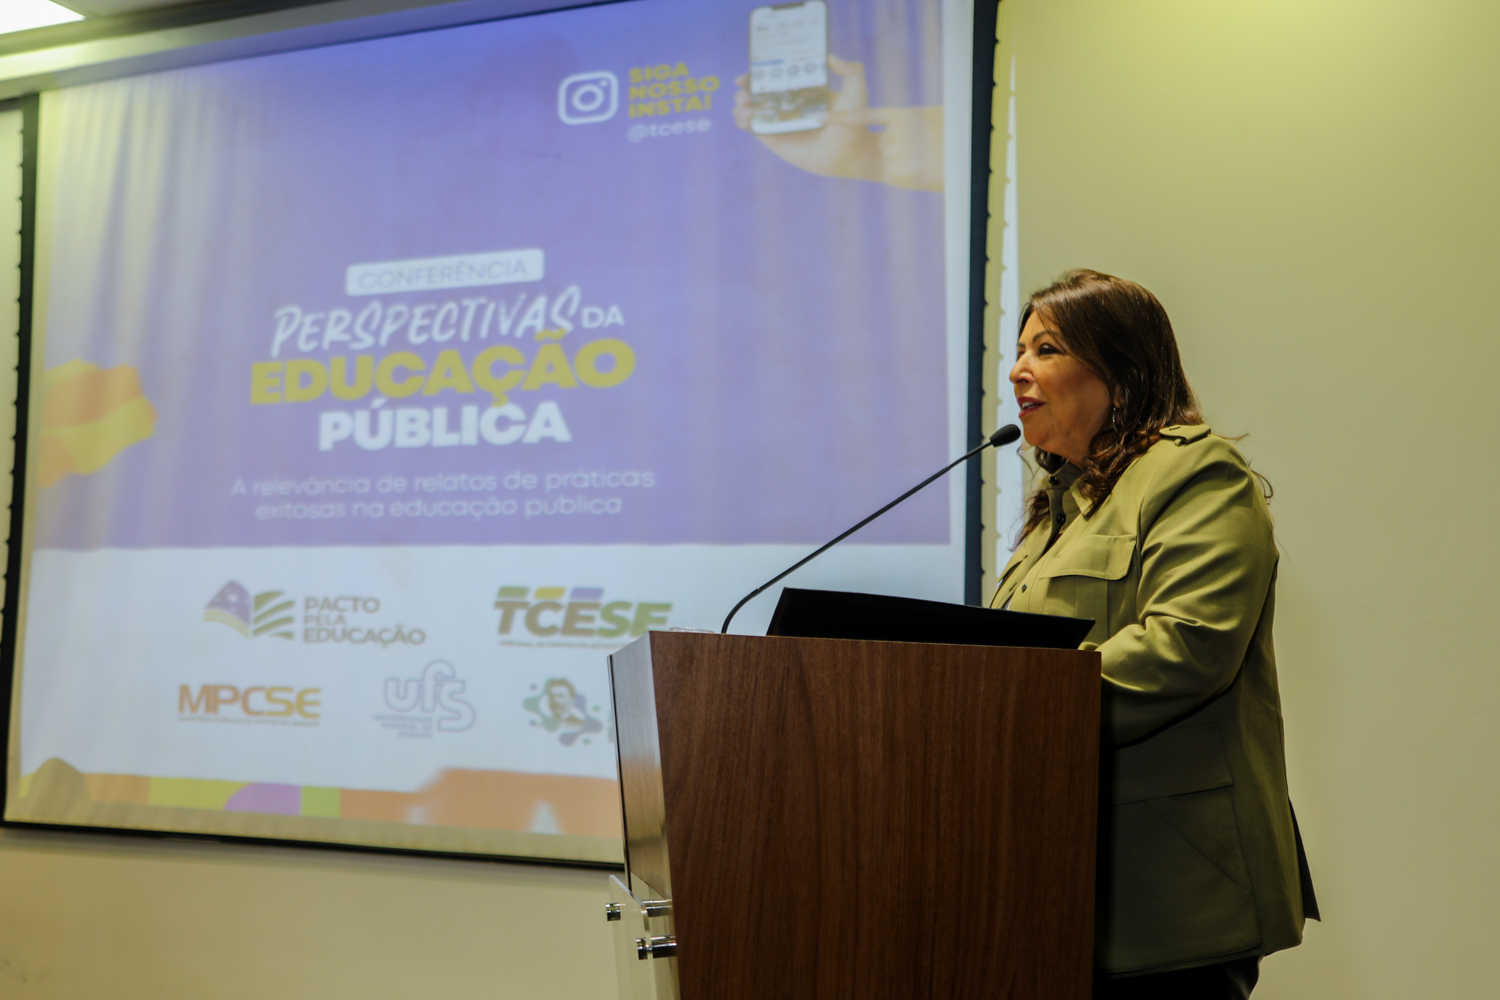 Susana Azevedo é presidente do TCE-SE. (foto: Elisa Lemos/Ascom UFS)